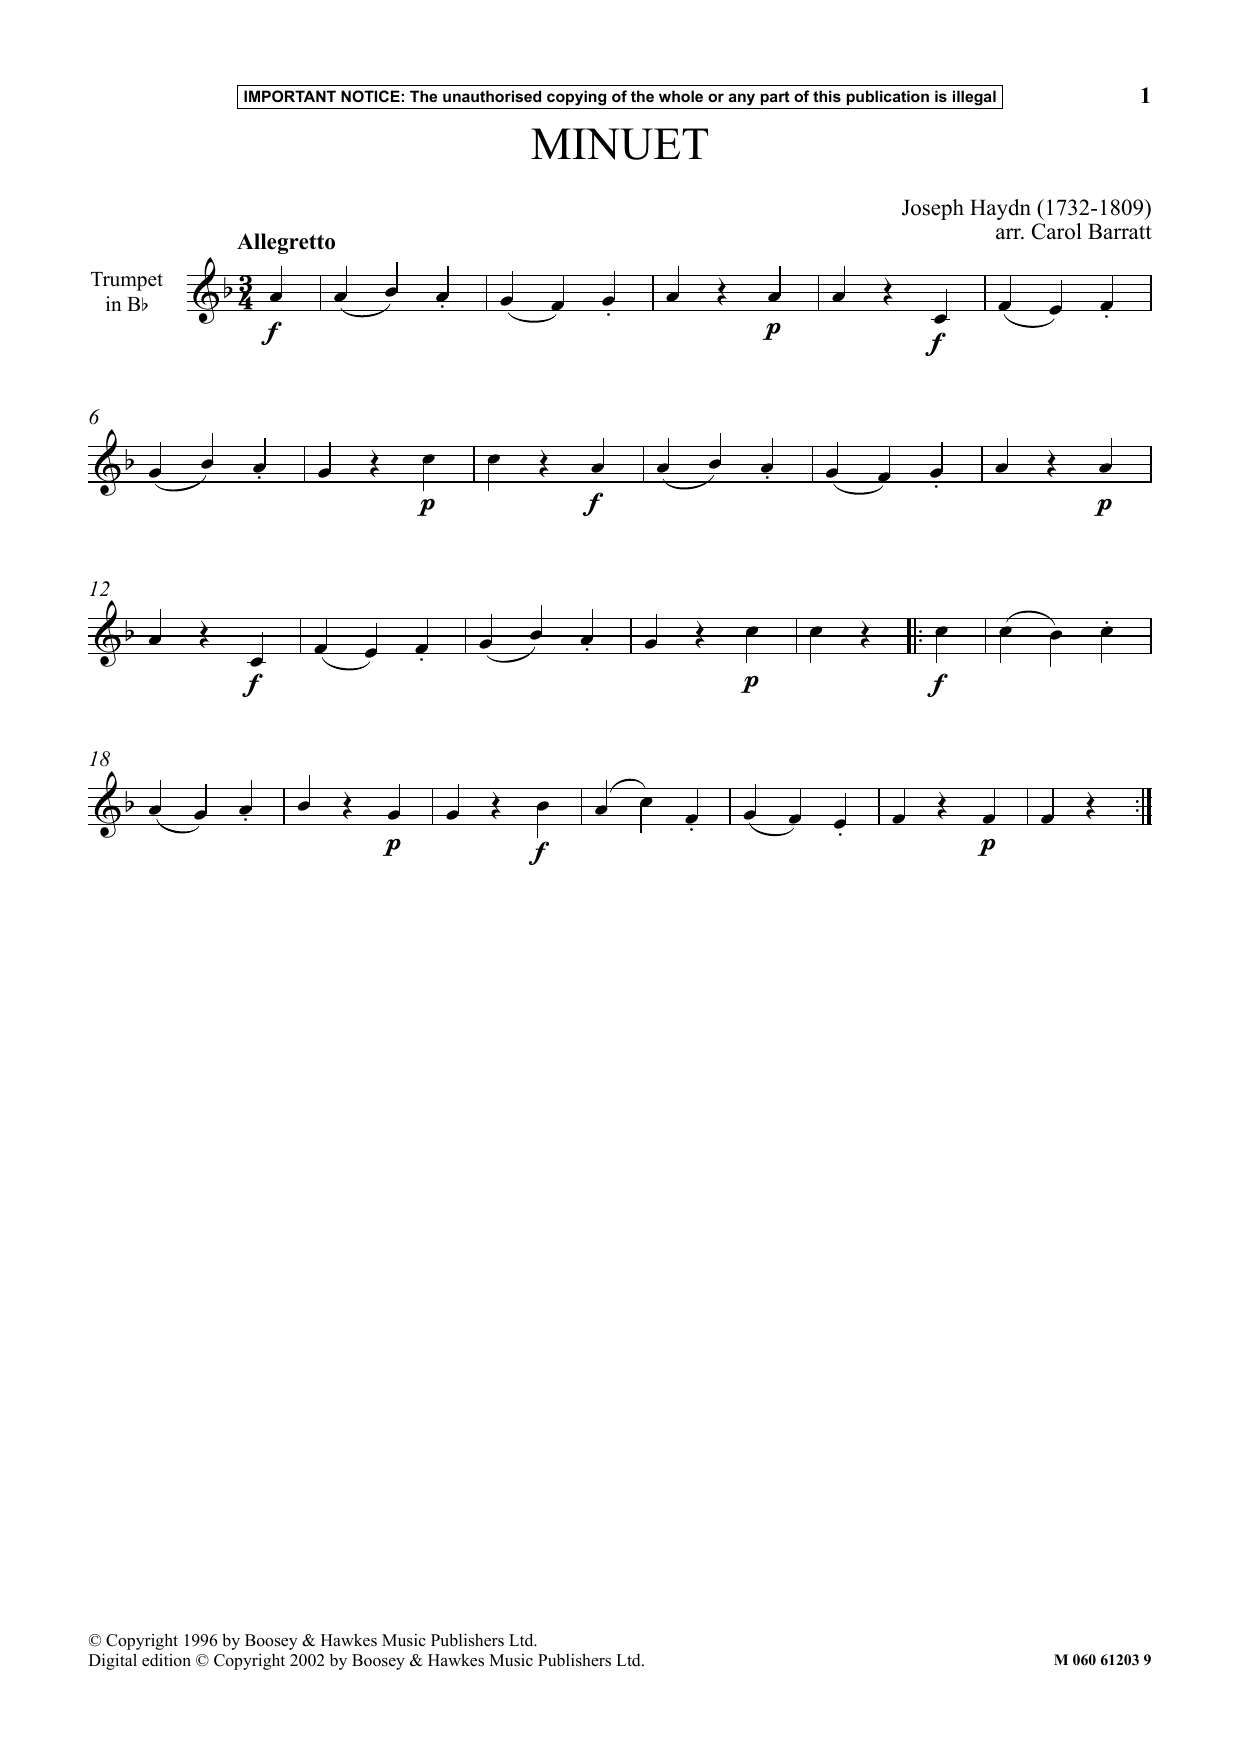 Download Joseph Haydn Minuet Sheet Music